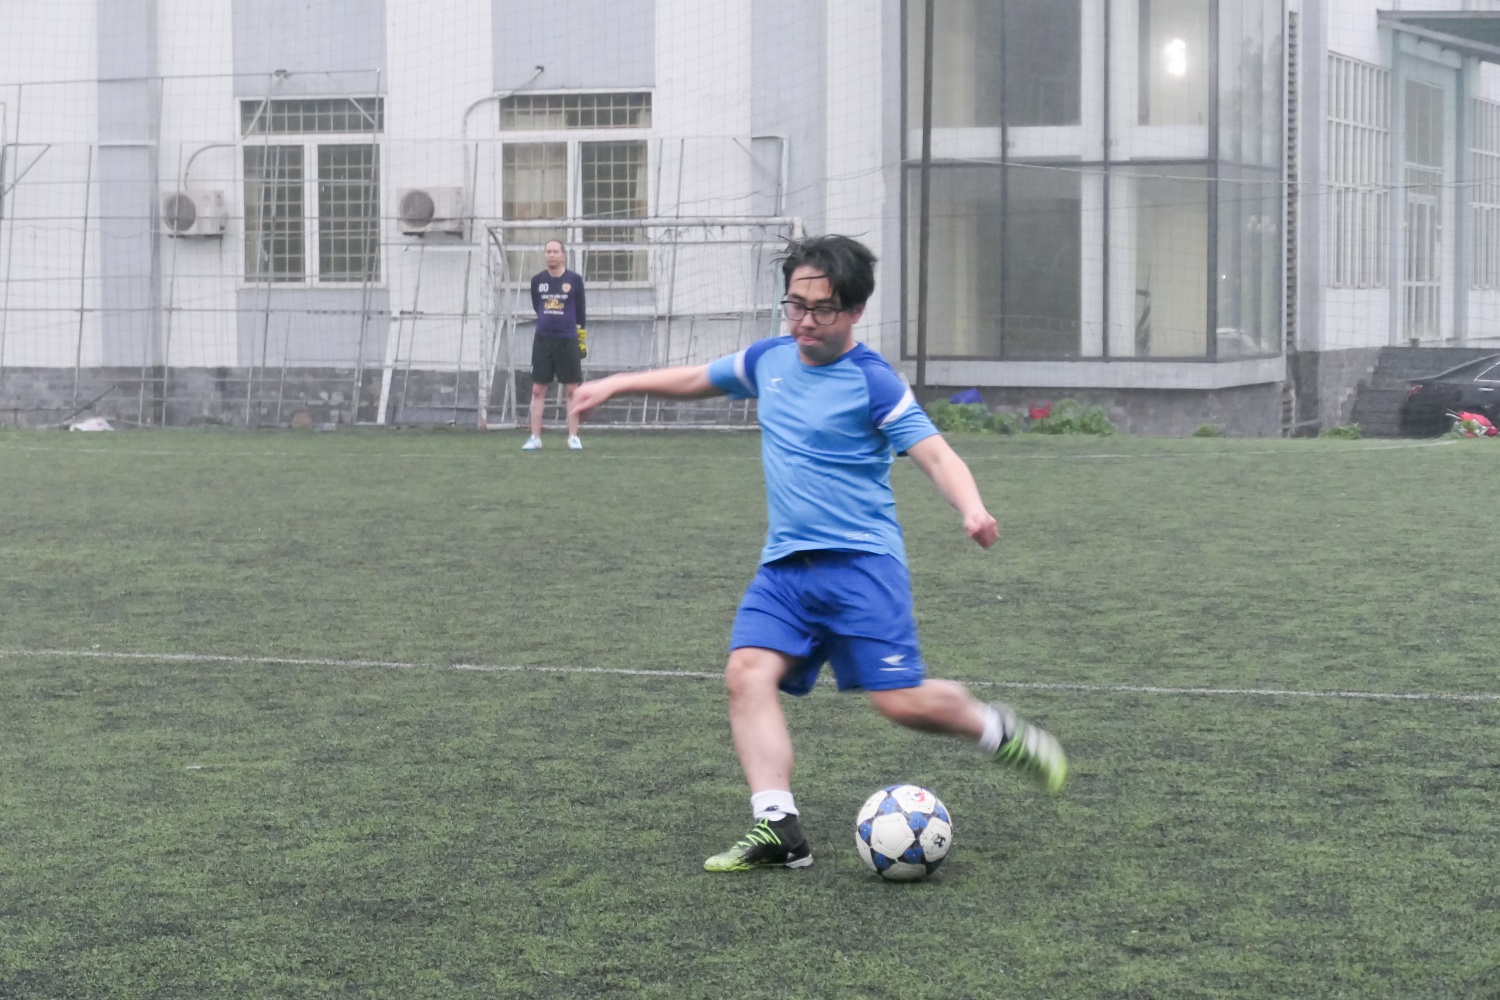 Bế mạc Giải bóng đá Cúp Tứ Hùng do Đoàn Thanh niên Cơ quan Tập đoàn Dầu khí Việt Nam tổ chức